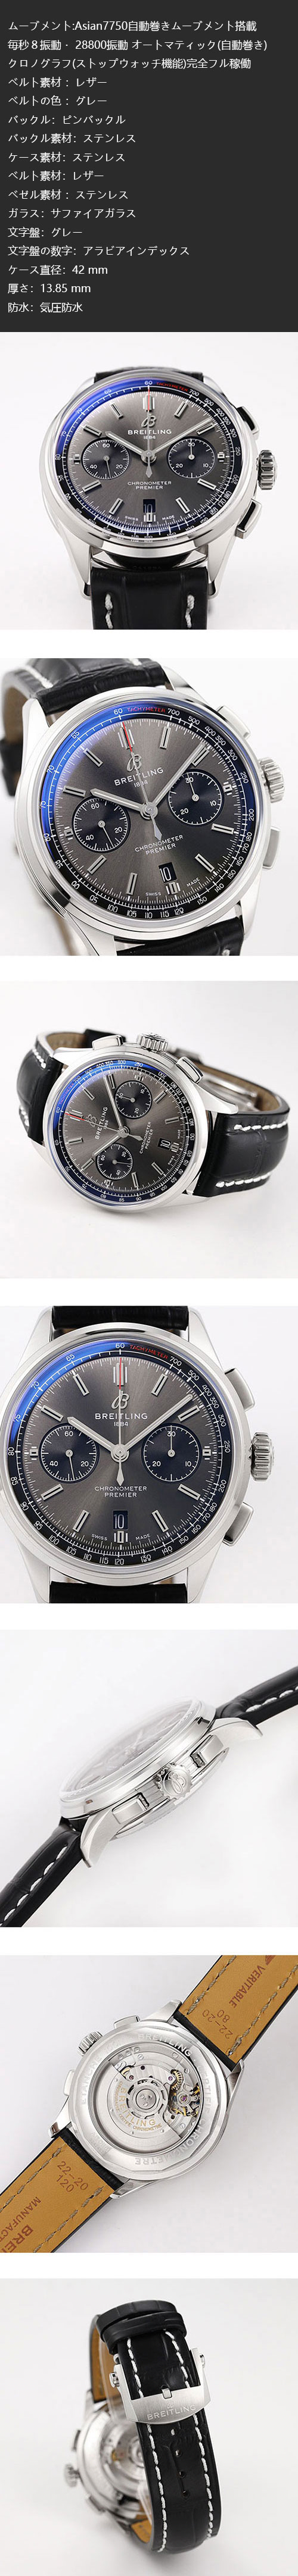 最新品ご案内:ブライトリングコピー時計 プレミエ B01 クロノグラフ 42mm